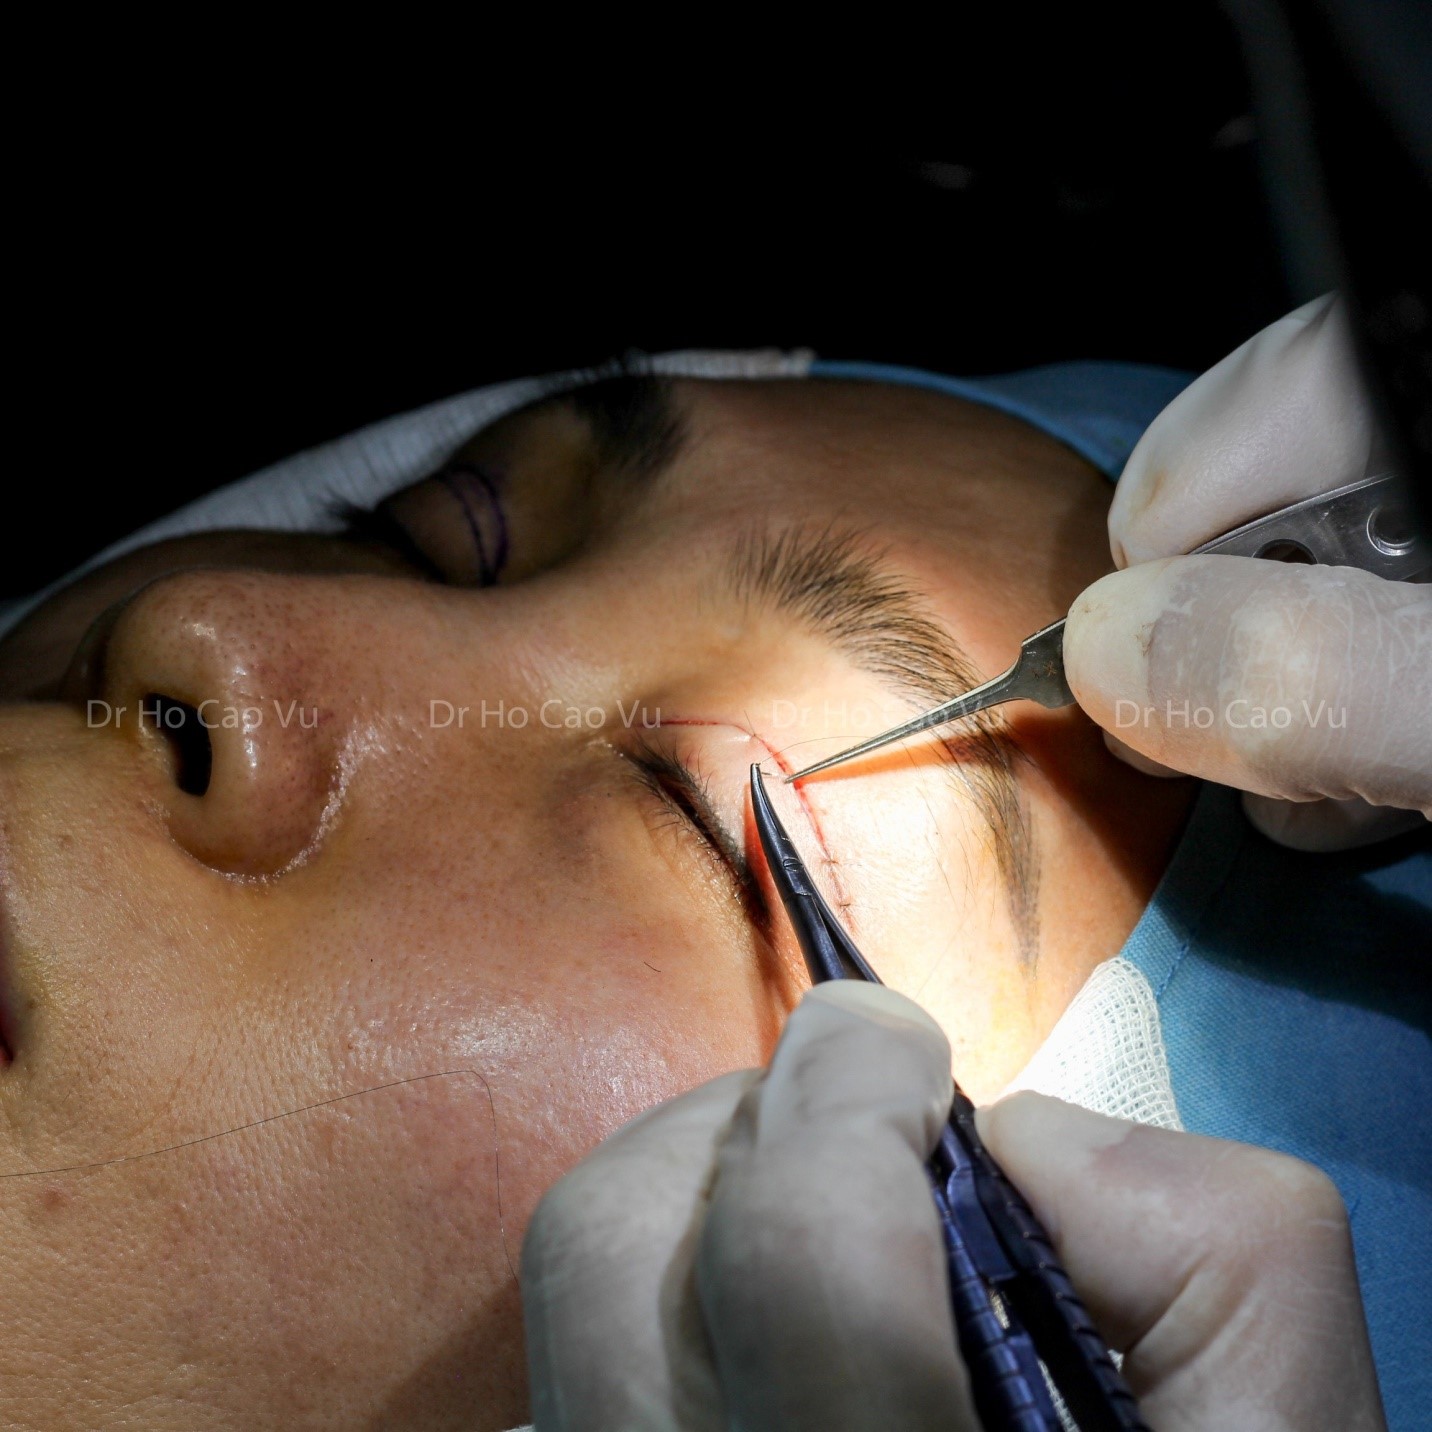 Lấy lại vẻ hoàn hảo cho đôi mắt của bạn bằng phẫu thuật cắt mí mắt. Với đội ngũ chuyên gia giỏi và nhiều kinh nghiệm, quy trình phẫu thuật sẽ được thực hiện an toàn và hiệu quả nhất. Một đôi mắt khỏe mạnh và xinh đẹp sẽ đón chào bạn từ bây giờ.